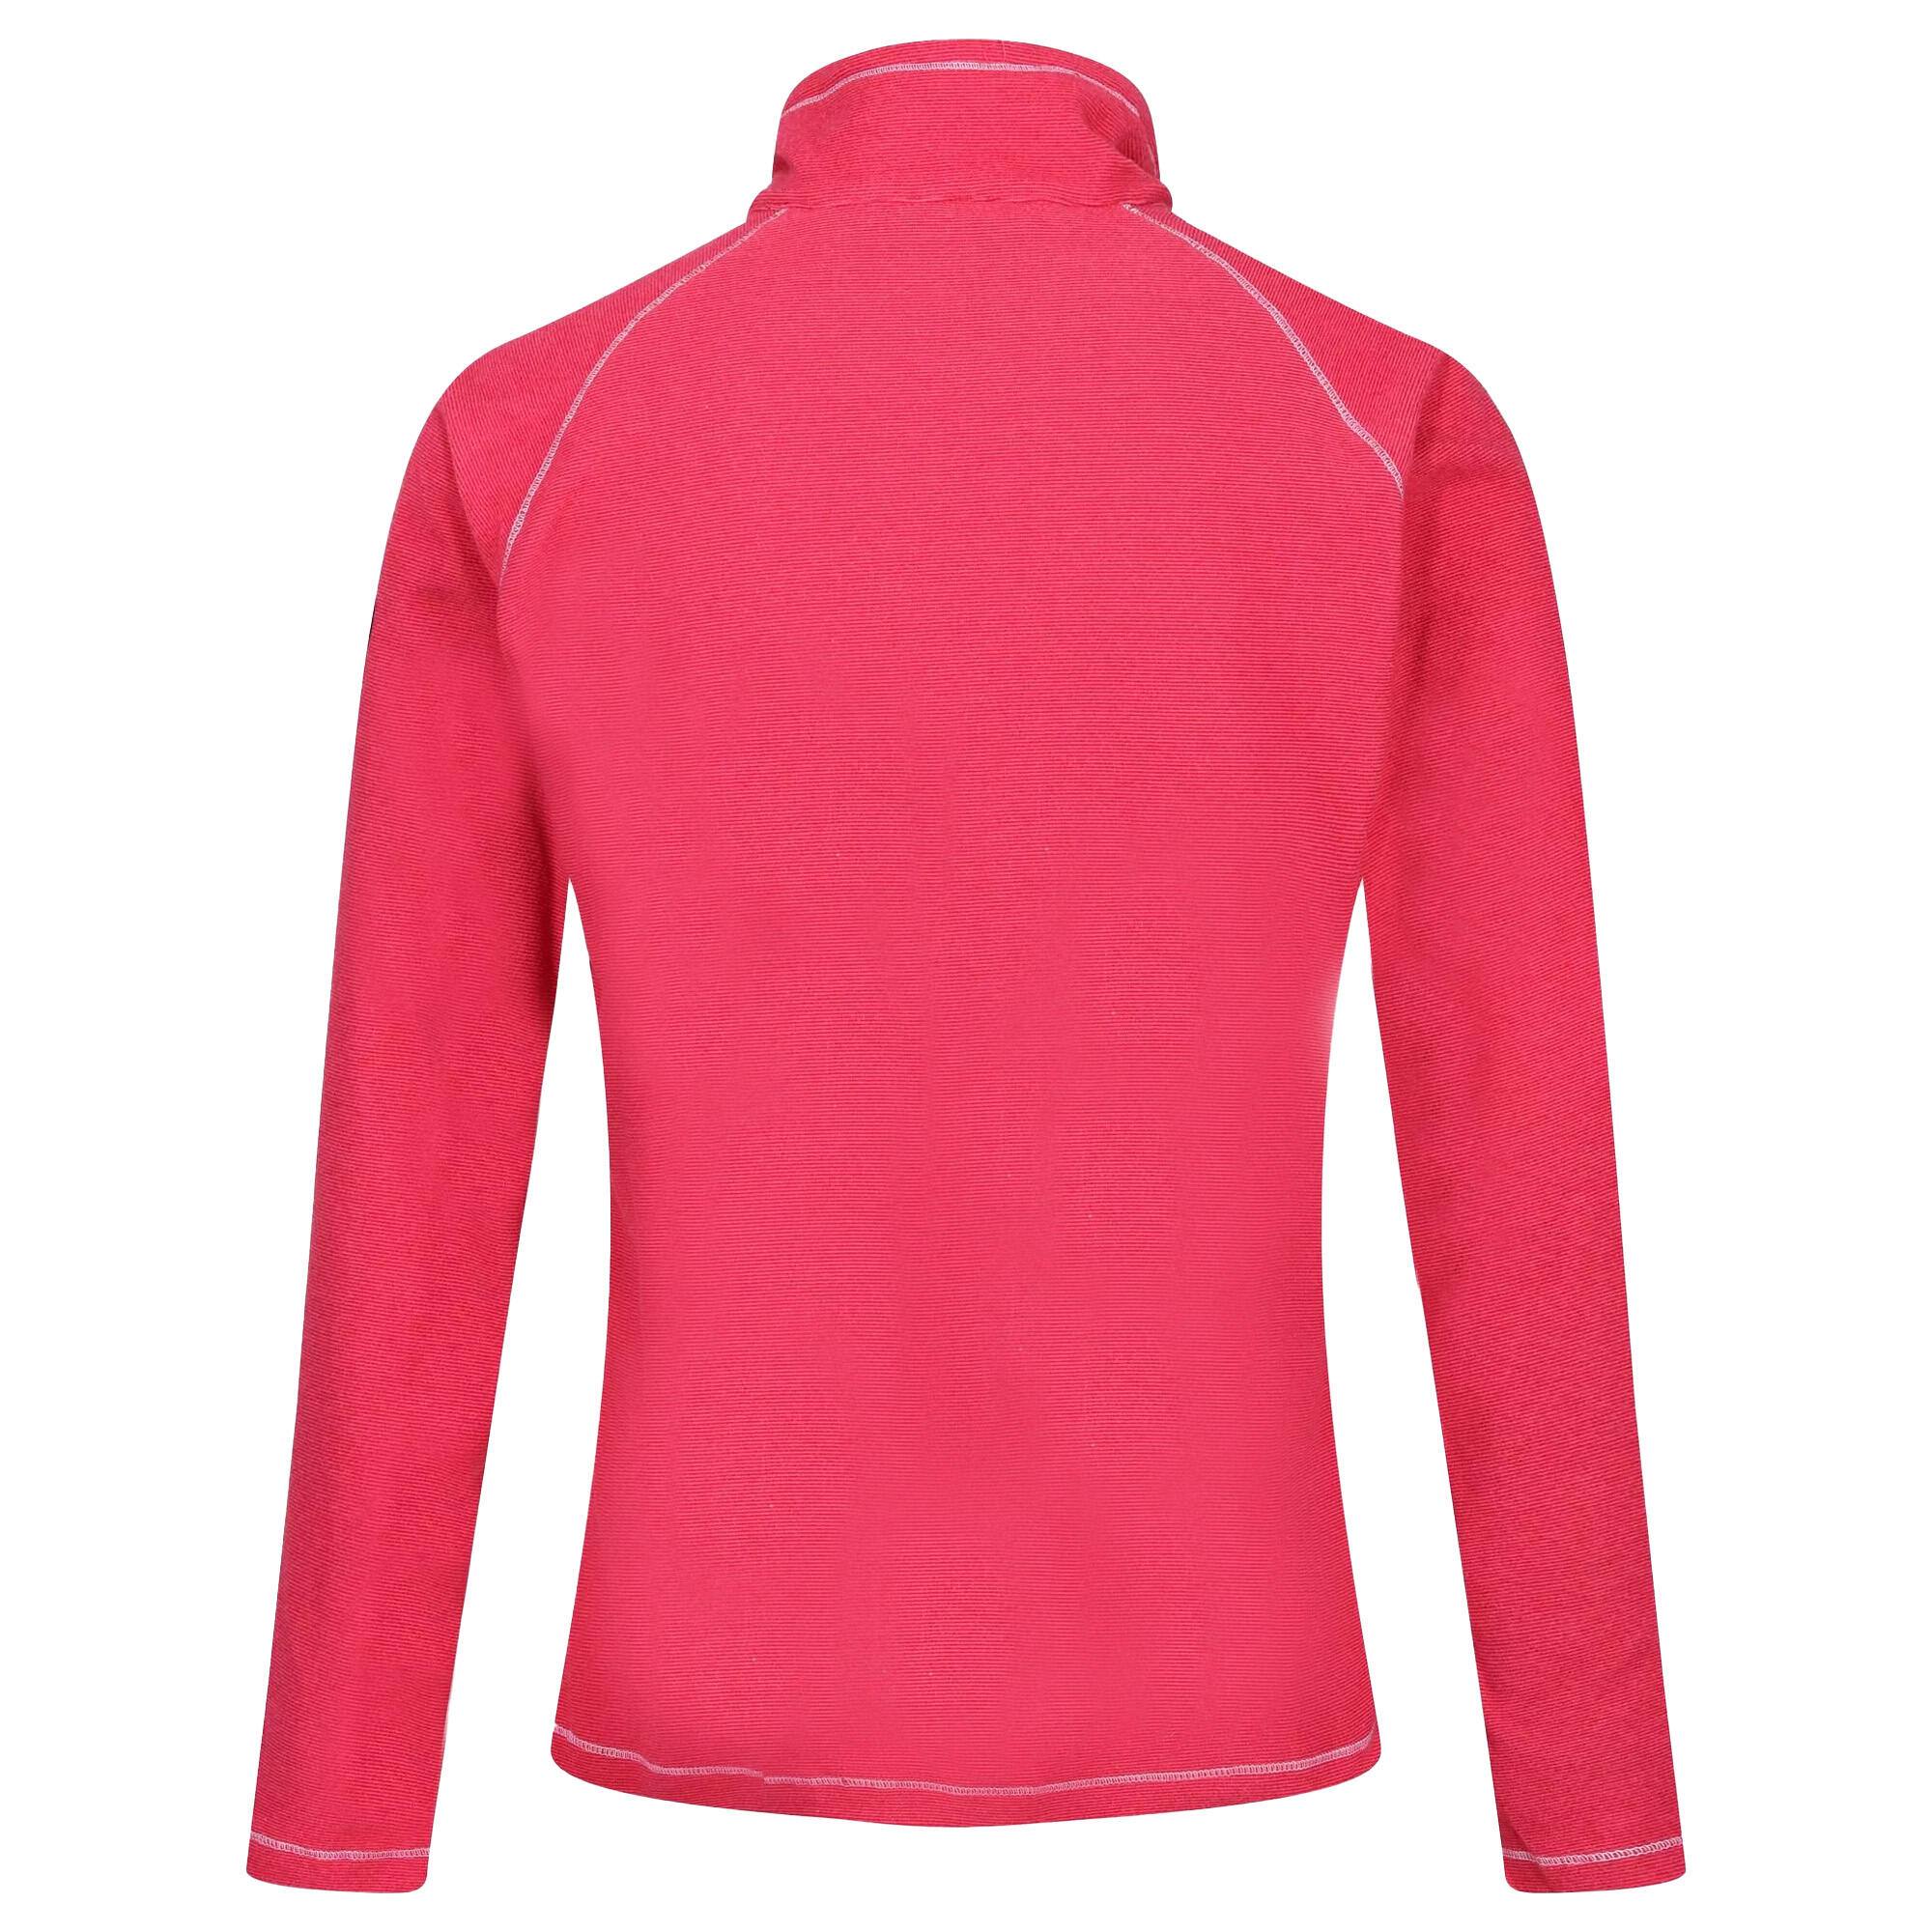 Great Outdoors Womens/Ladies Montes Half Zip Fleece Top (Pink Potion) 2/4